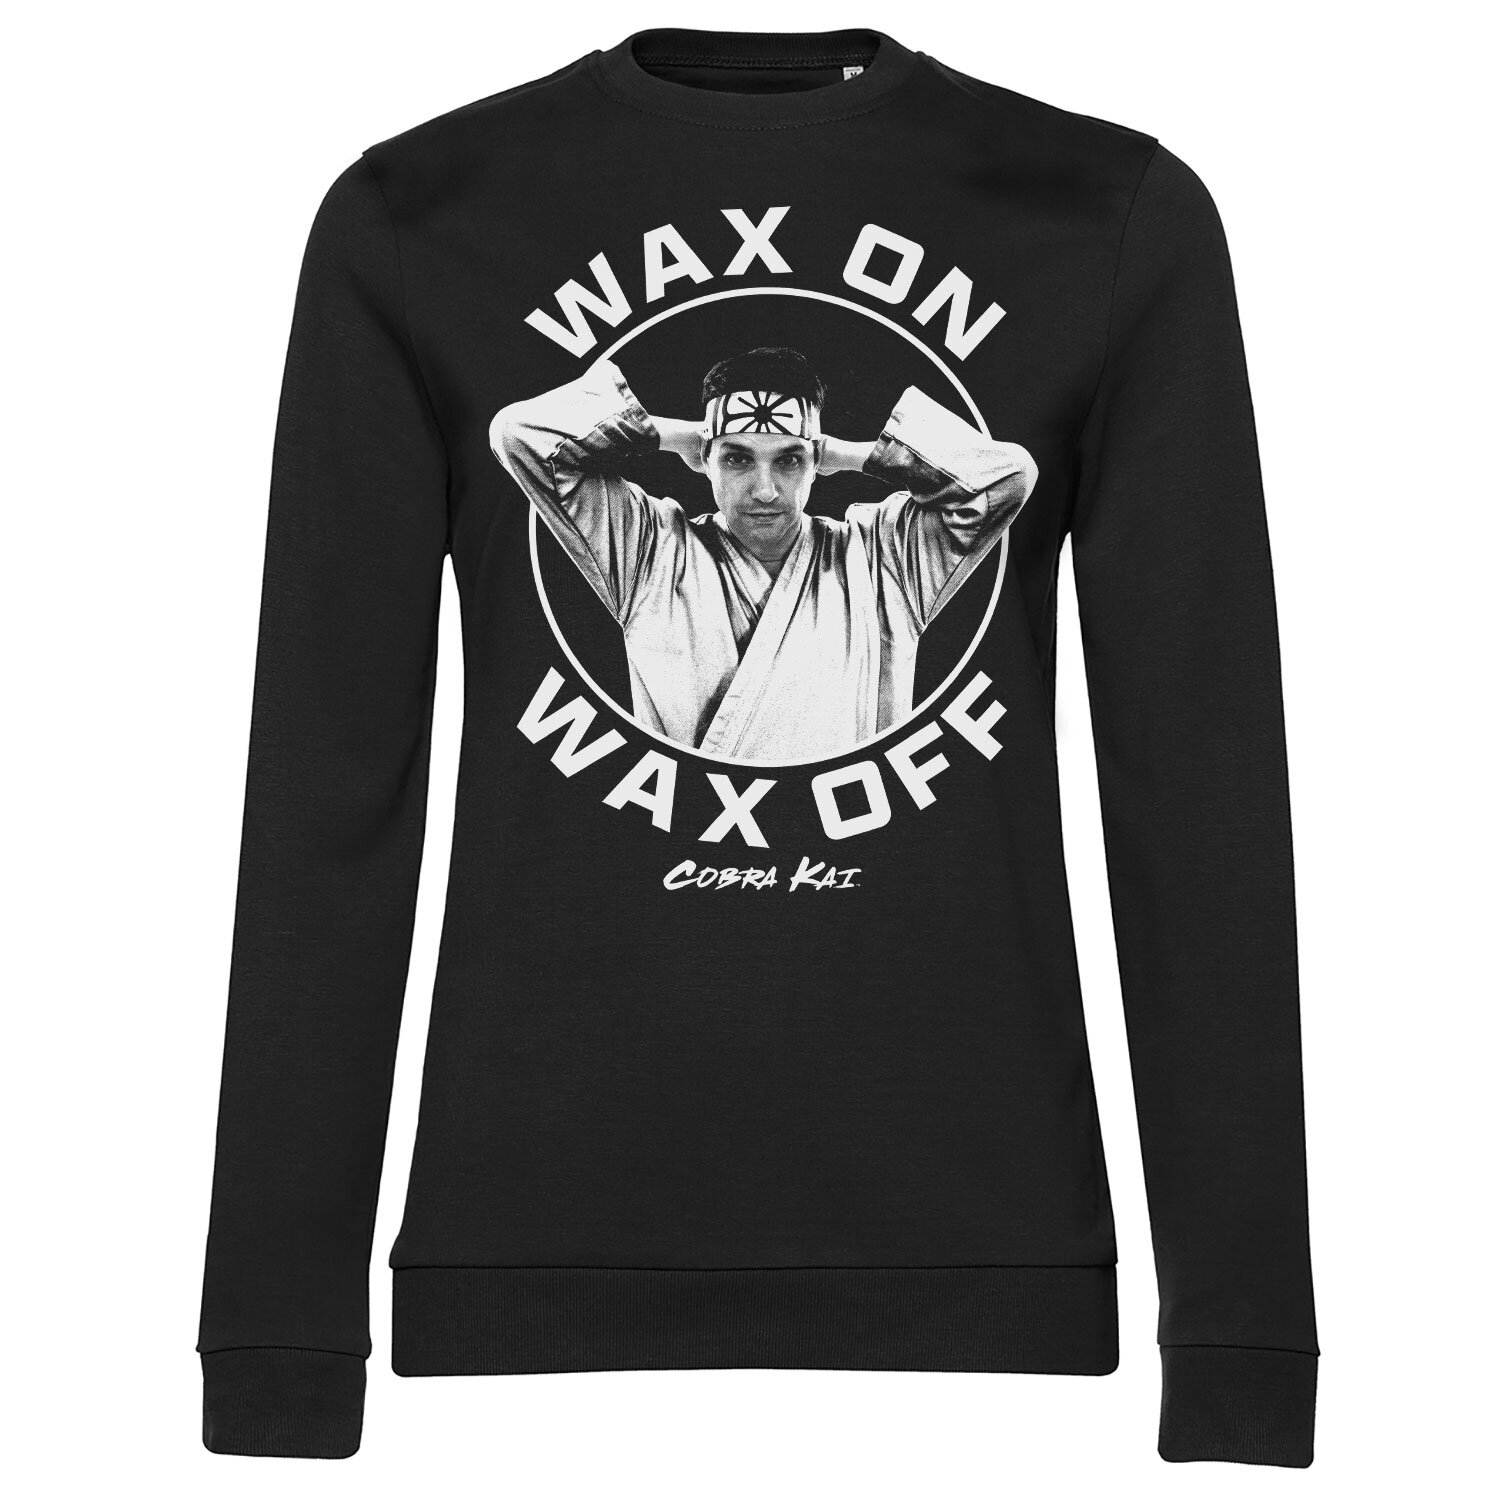 Wax On Wax Off Girly Sweatshirt